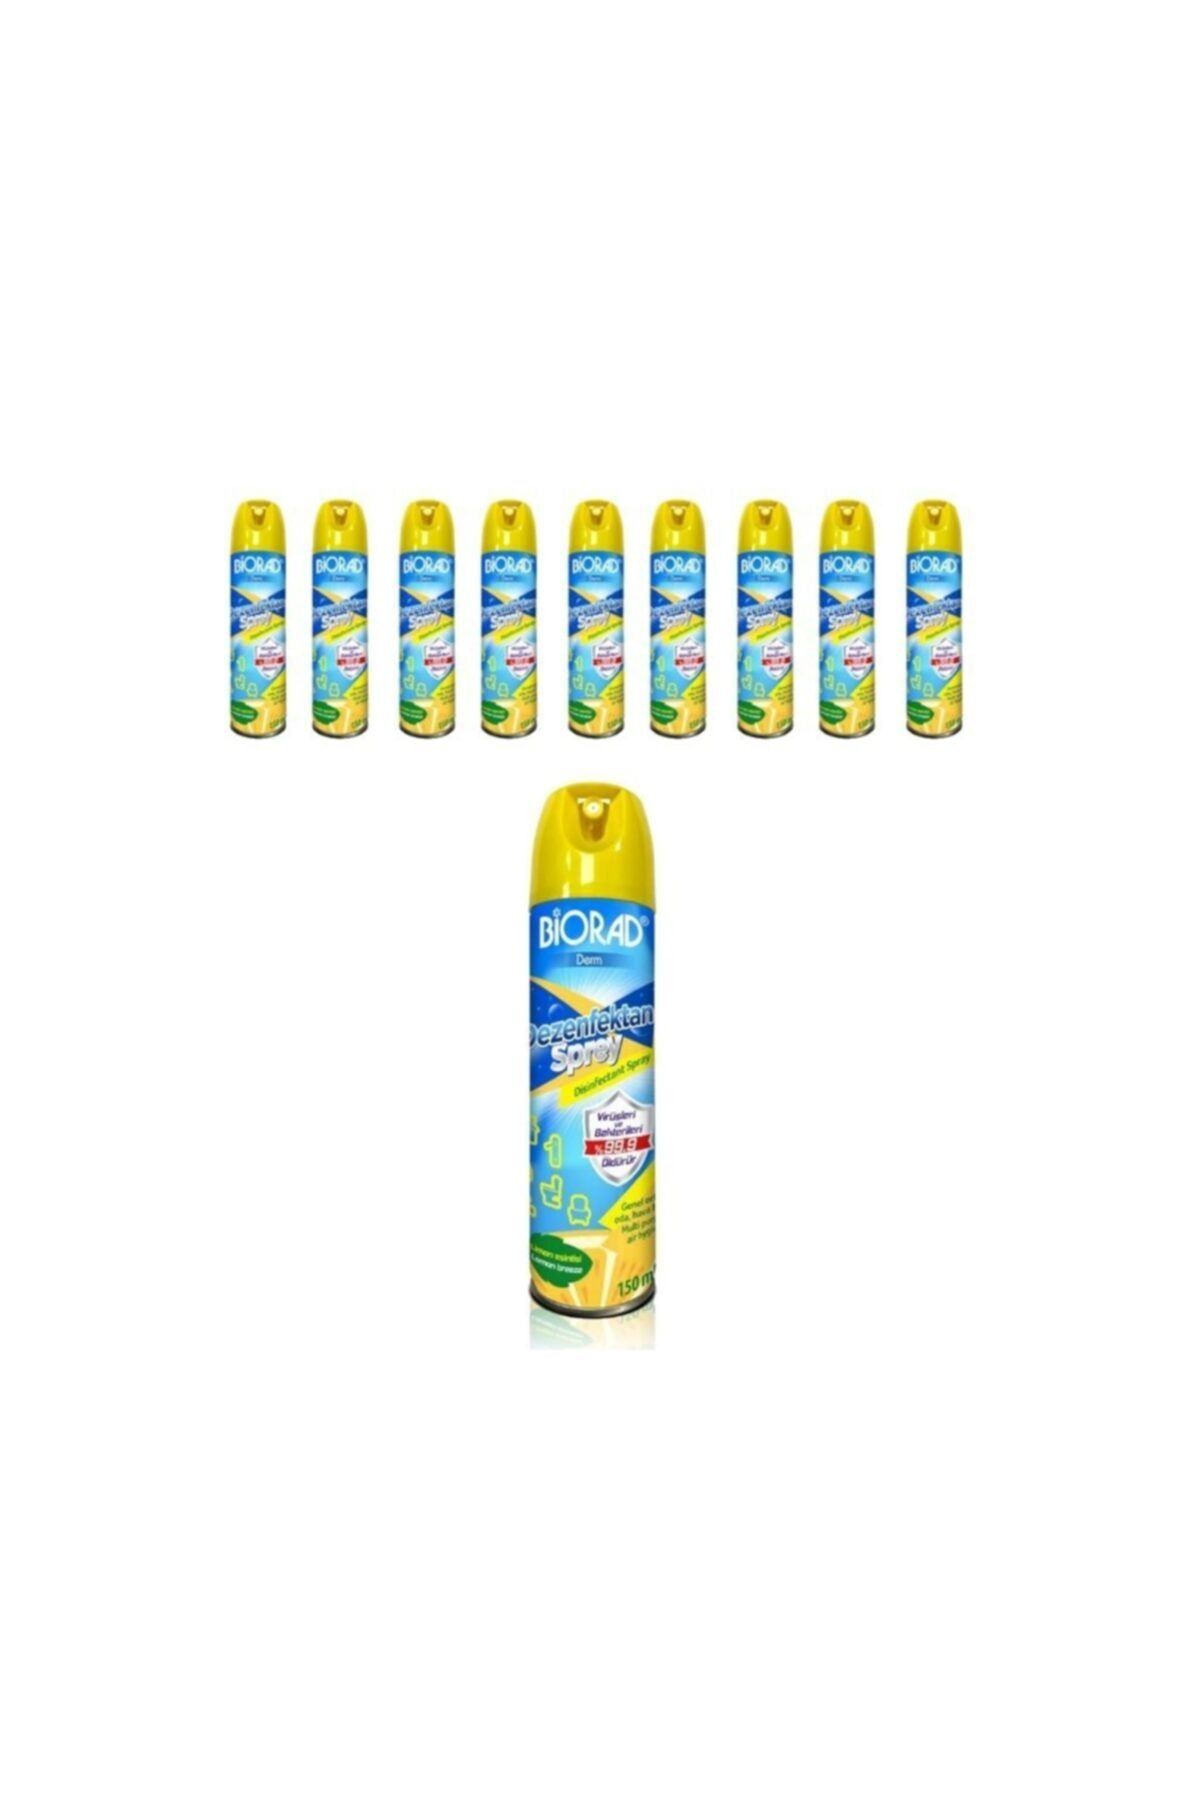 BİORAD Derm Limon Parfümlü Aerosol Oda Kokusu Ve Ortam Dezenfektanı 150 ml 10 Adet